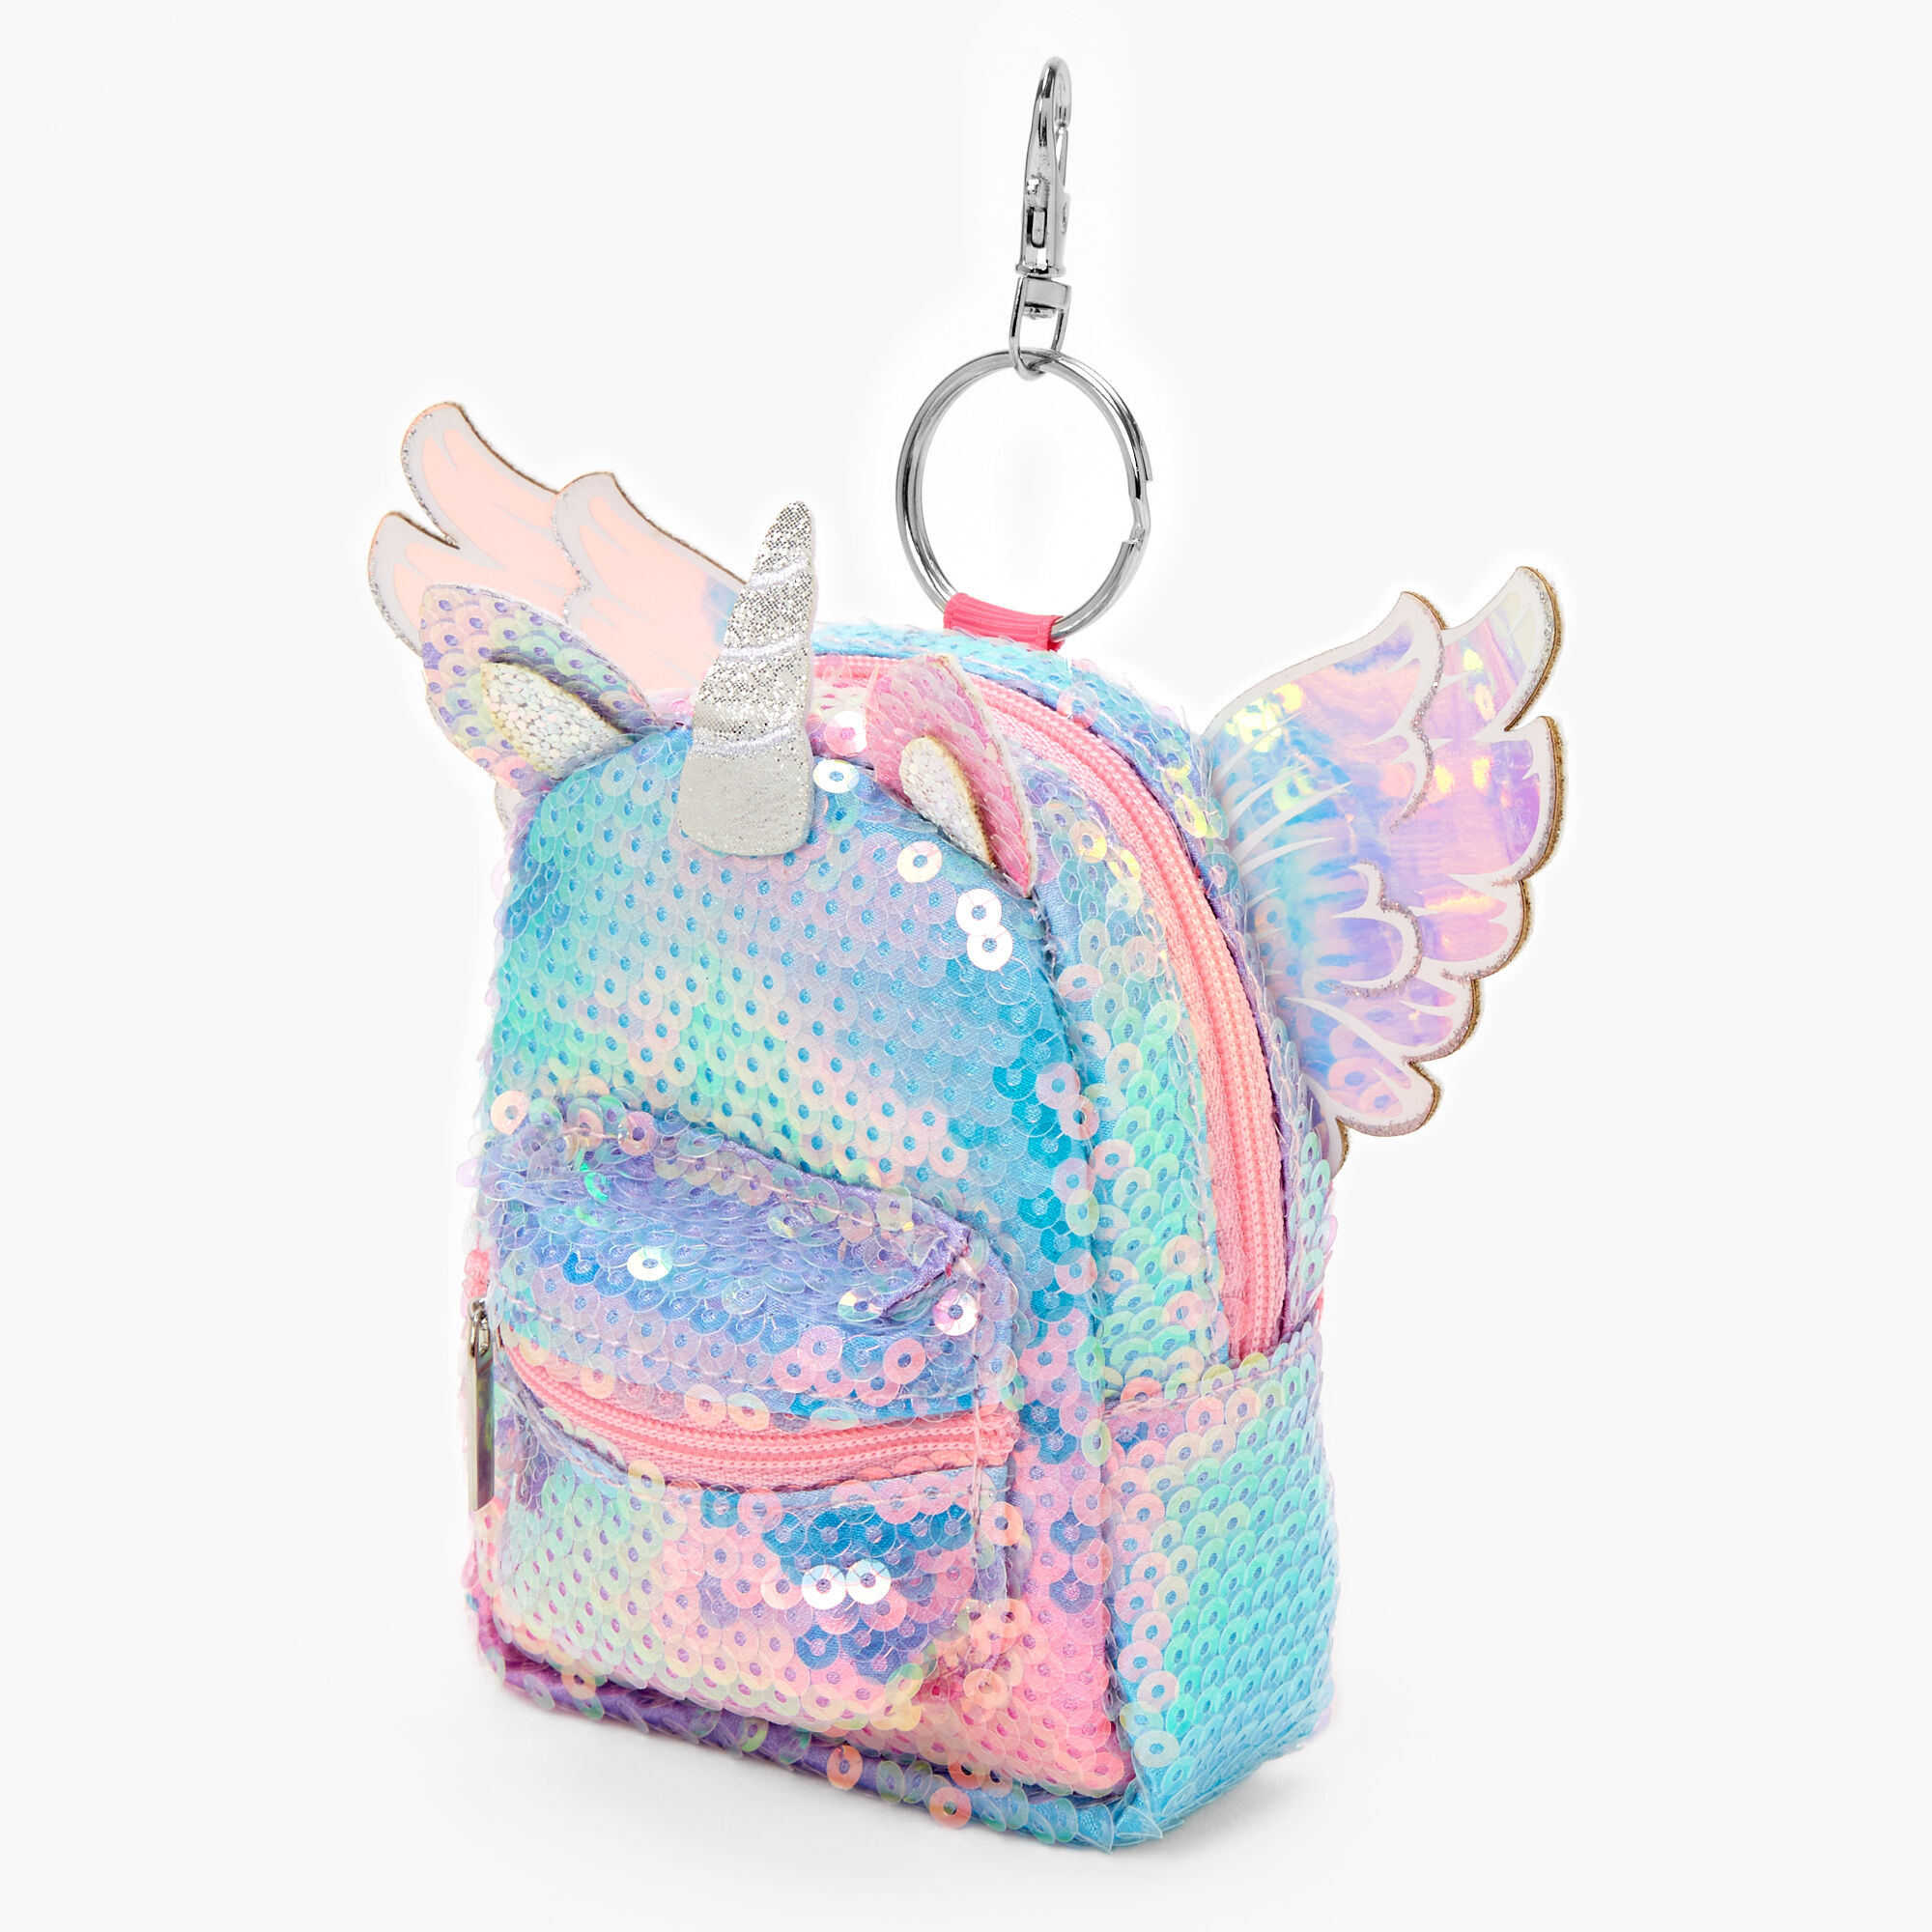 NEW Real Littles Handbags Glitter Unicorn Backpack Hanger Lot Out